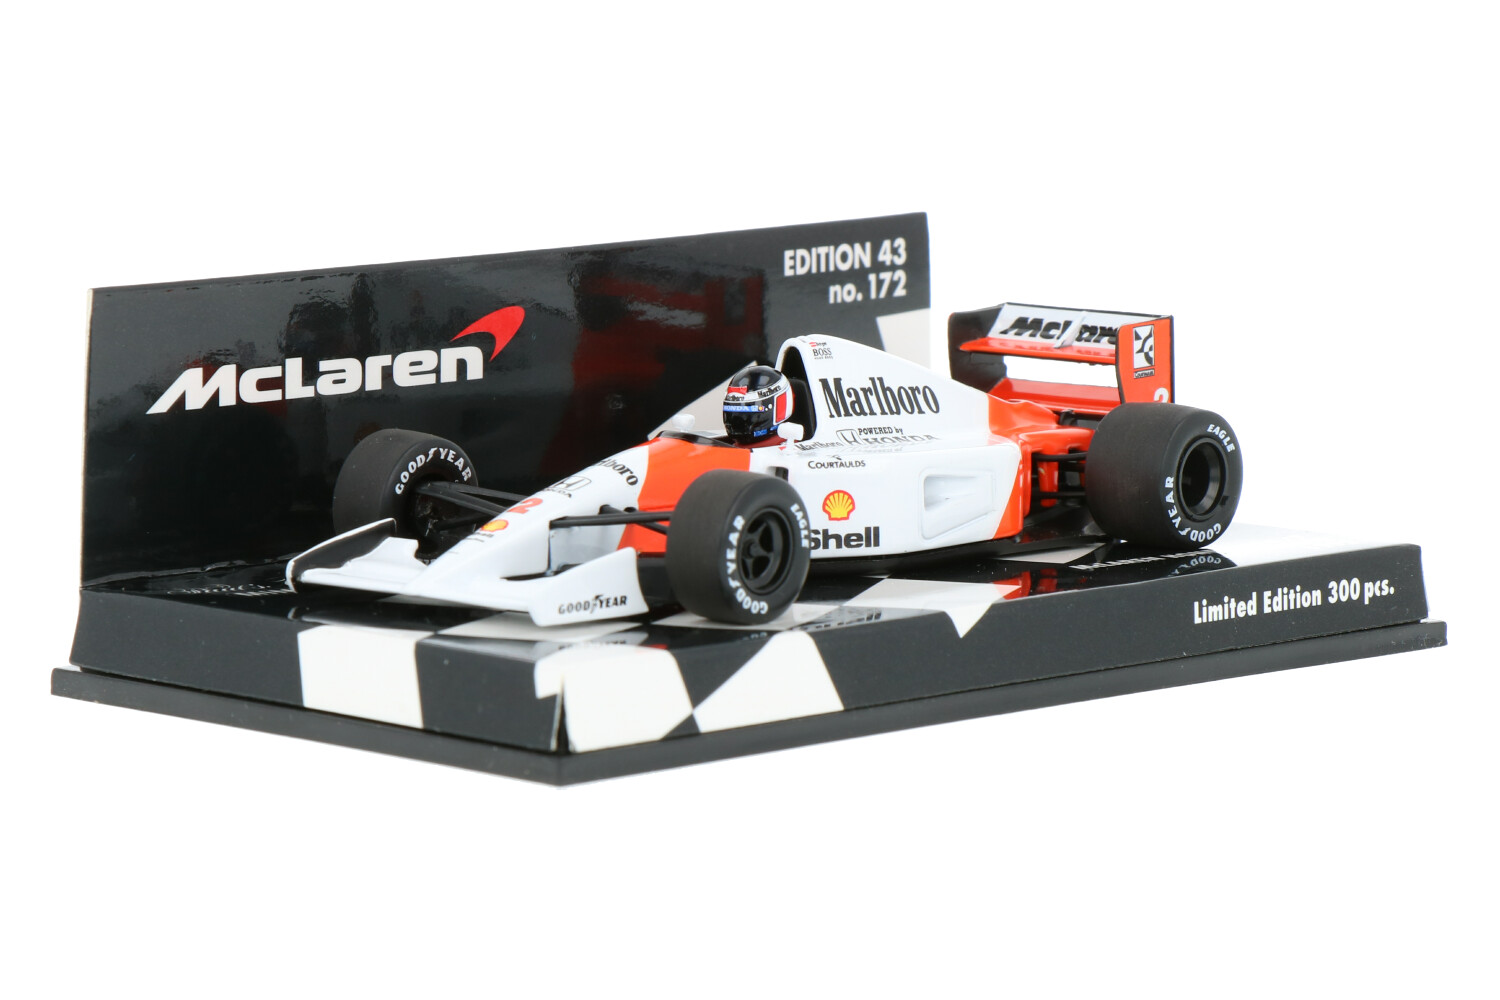 McLaren-Honda-MP4-7-530924302_33154012138013230-Minichamps-McLaren-Honda-MP4-7-530924302_Houseofmodelcars_.jpg